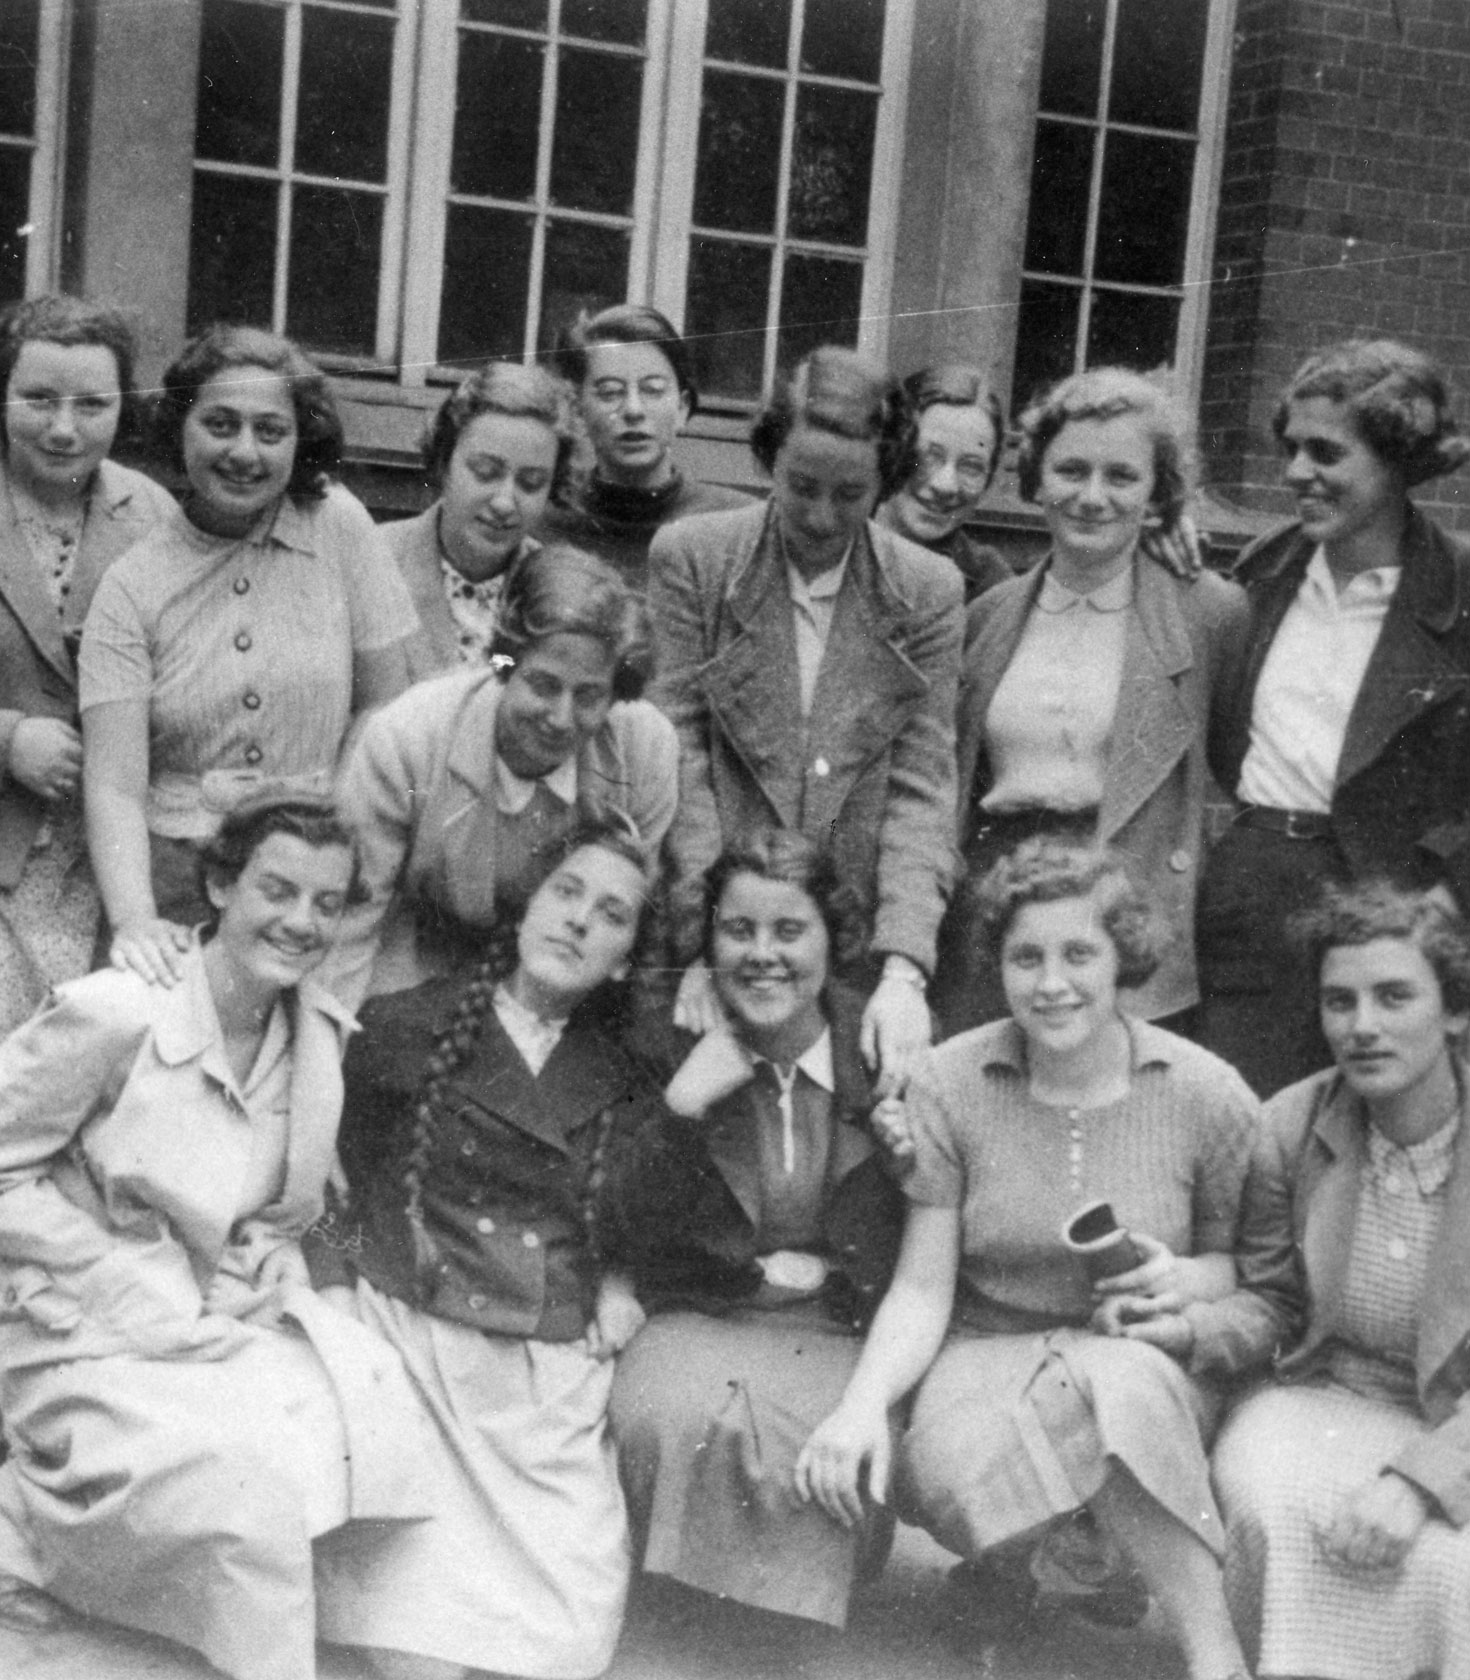 IGDJ (Sammlung Randt) 21-015/016, Jenny Marmorstein mit ihrer Schulklasse, der ersten Mädchenklasse in der Talmud-Tora-Schule, Hamburg 1938. Foto: unbekannt.